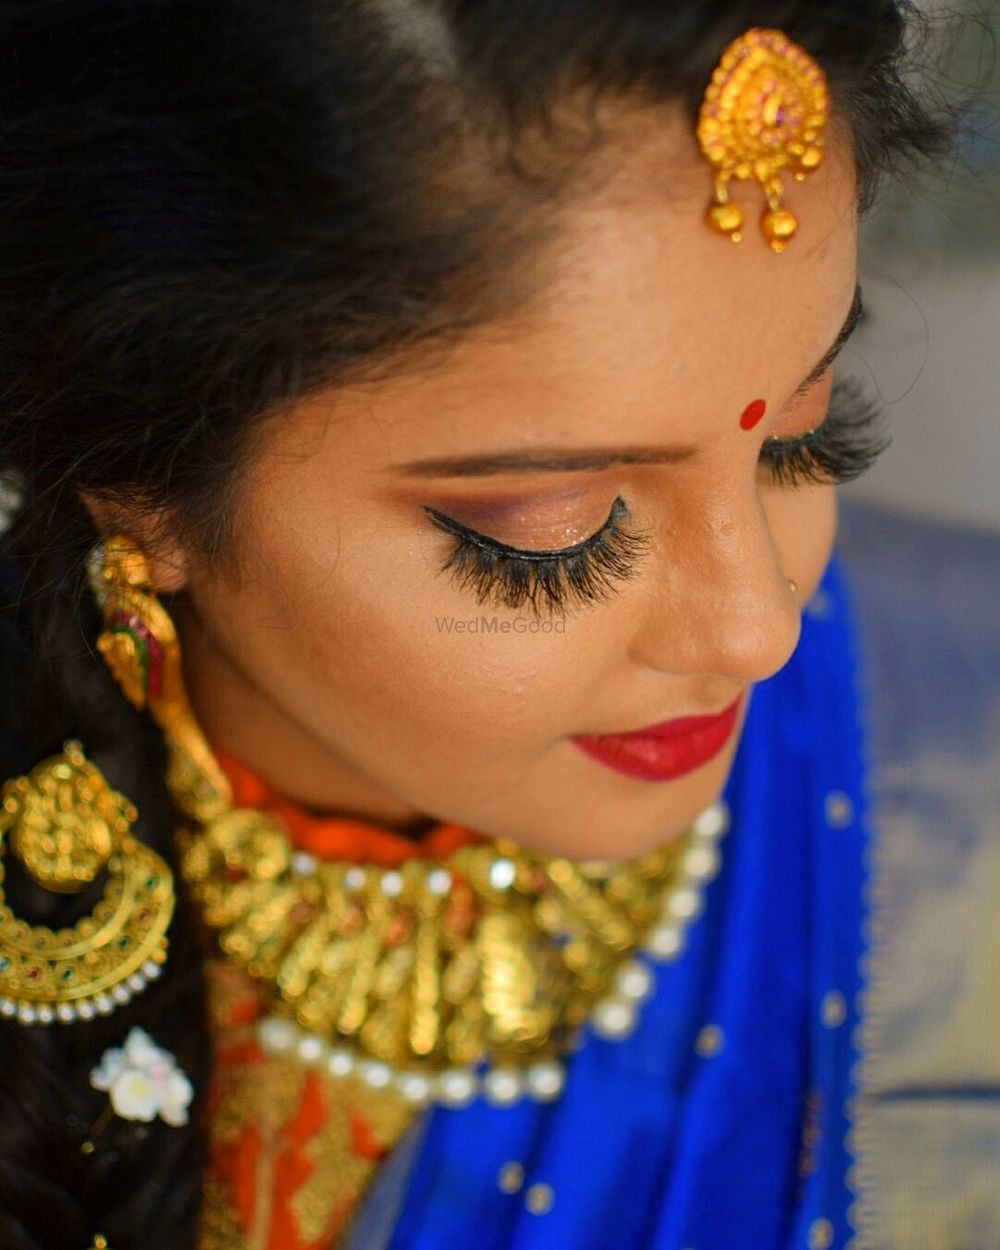 Photo By Kavya Bridal Makeovers - Bridal Makeup